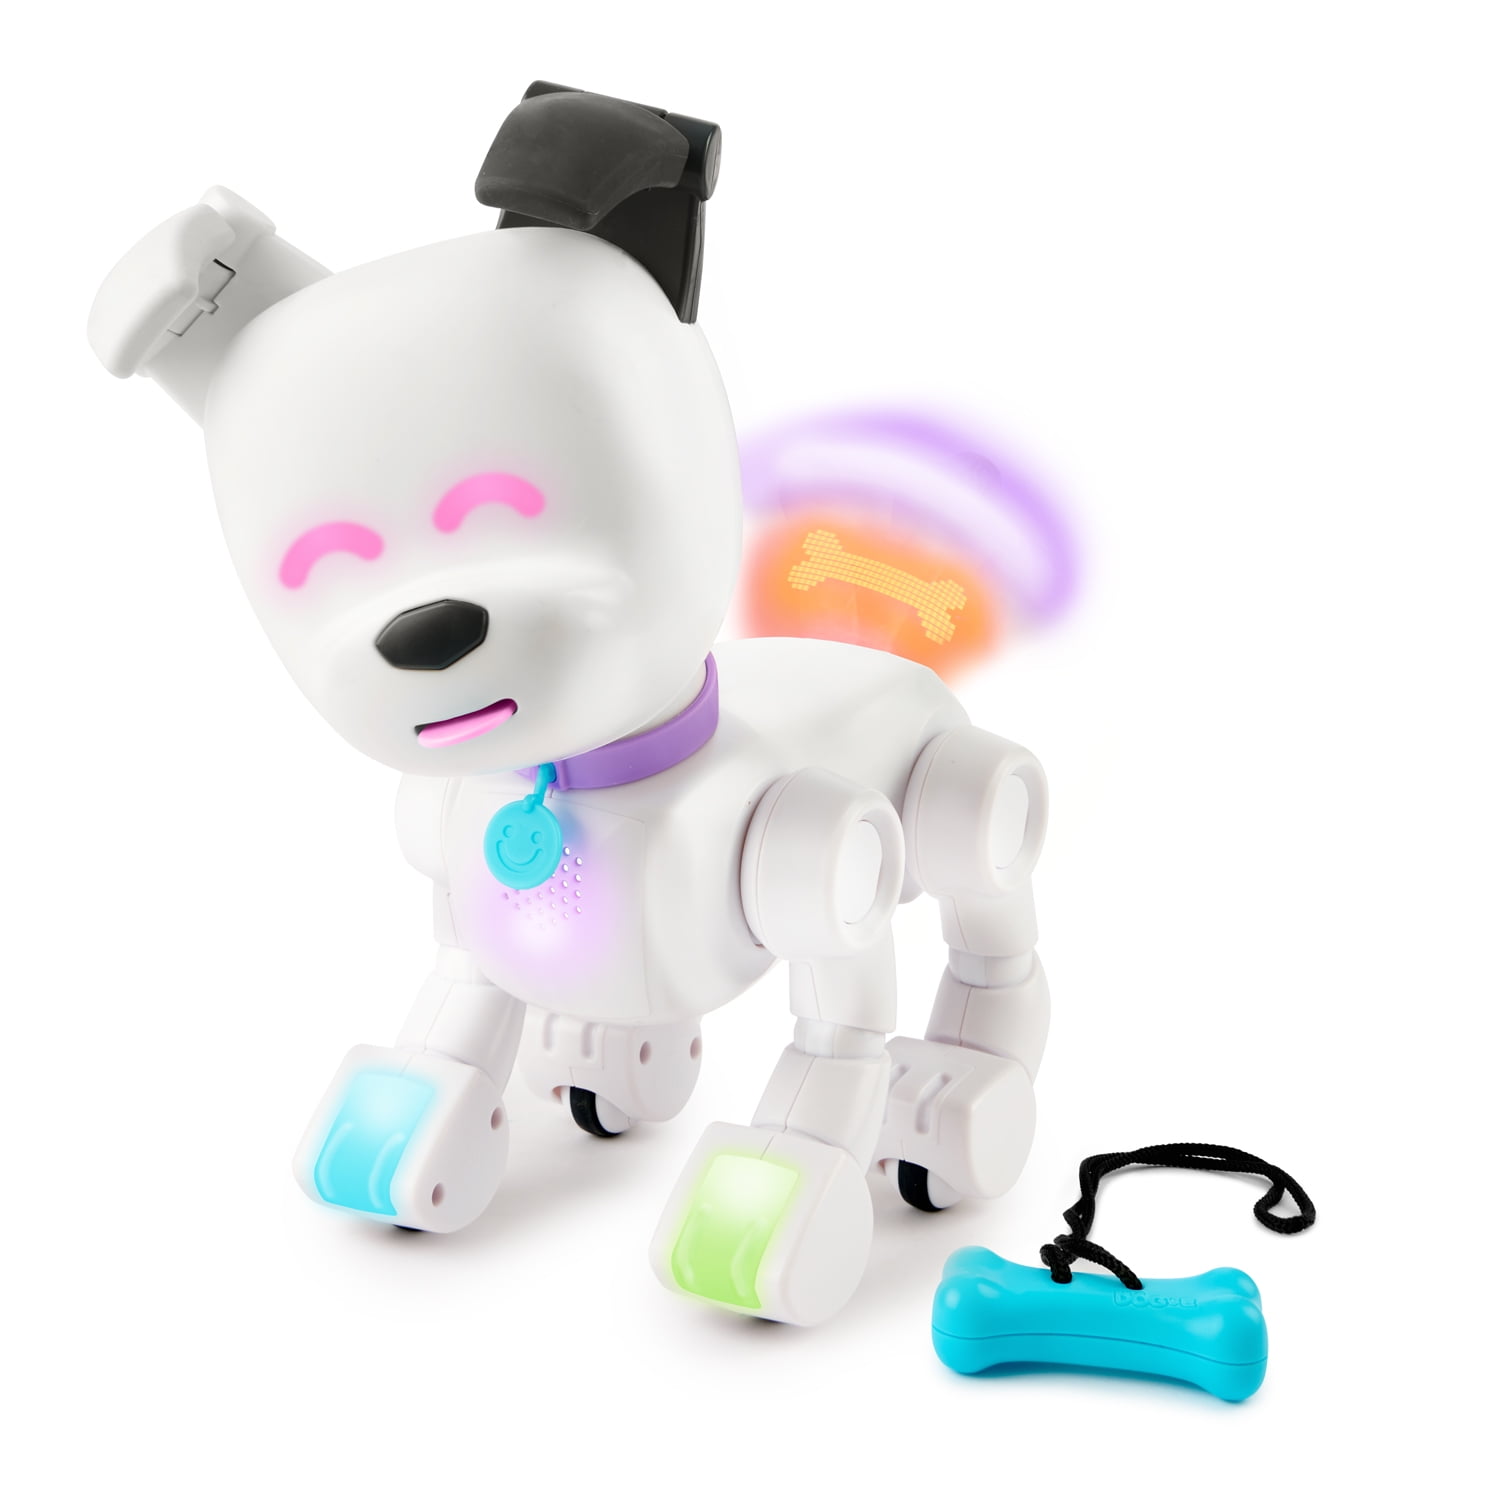 Dog E Interactive Robot With